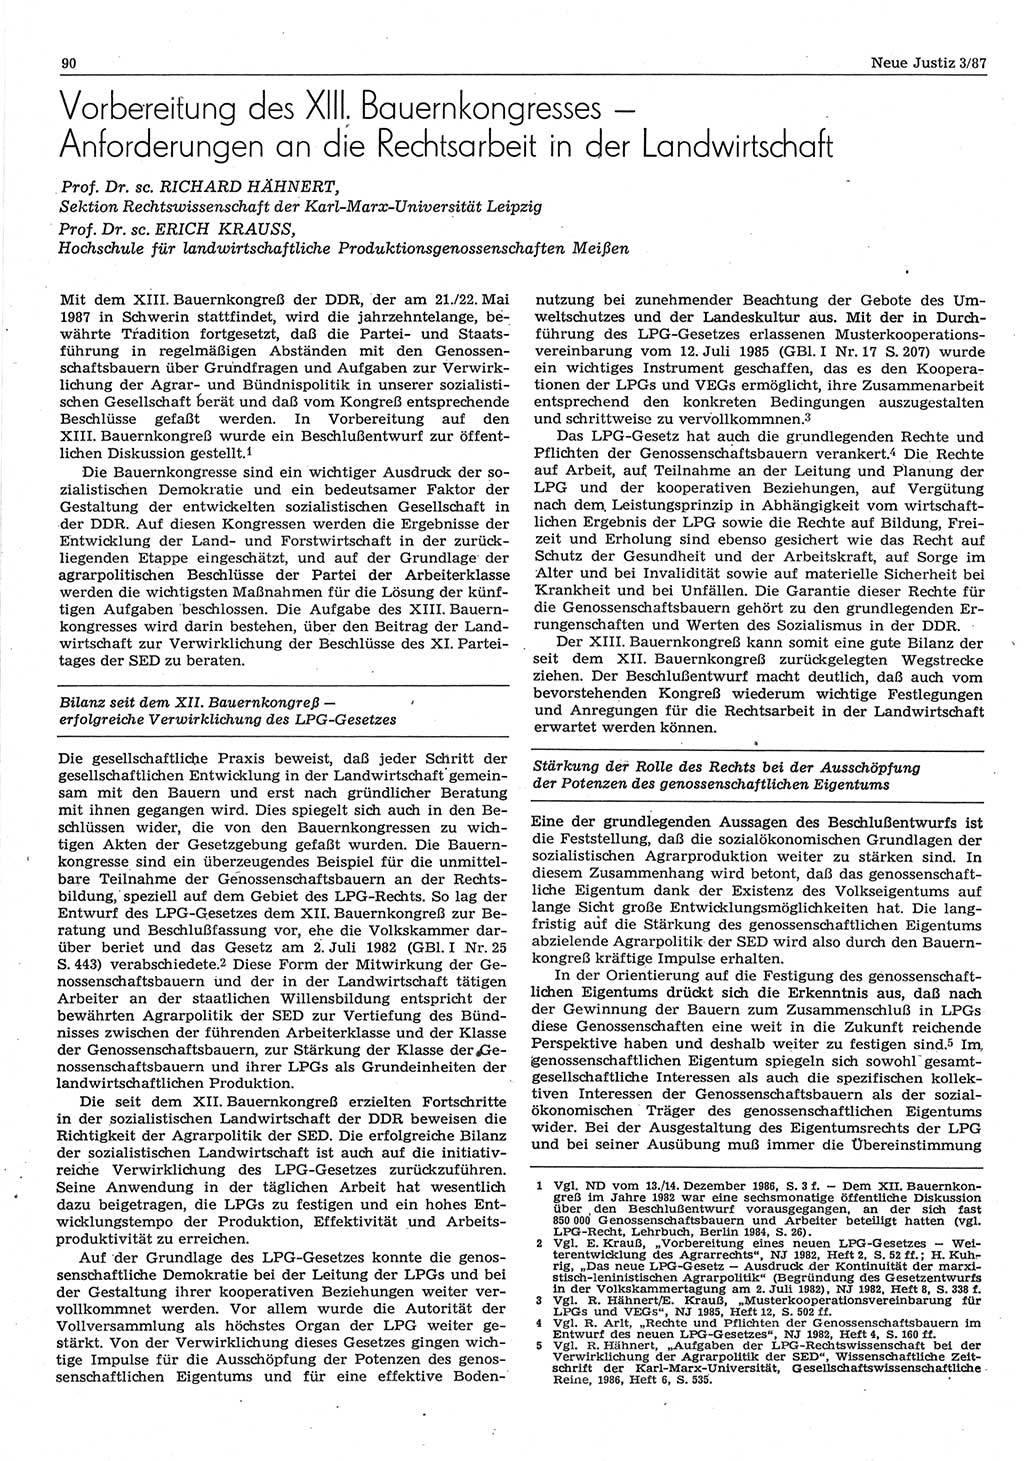 Neue Justiz (NJ), Zeitschrift für sozialistisches Recht und Gesetzlichkeit [Deutsche Demokratische Republik (DDR)], 41. Jahrgang 1987, Seite 90 (NJ DDR 1987, S. 90)